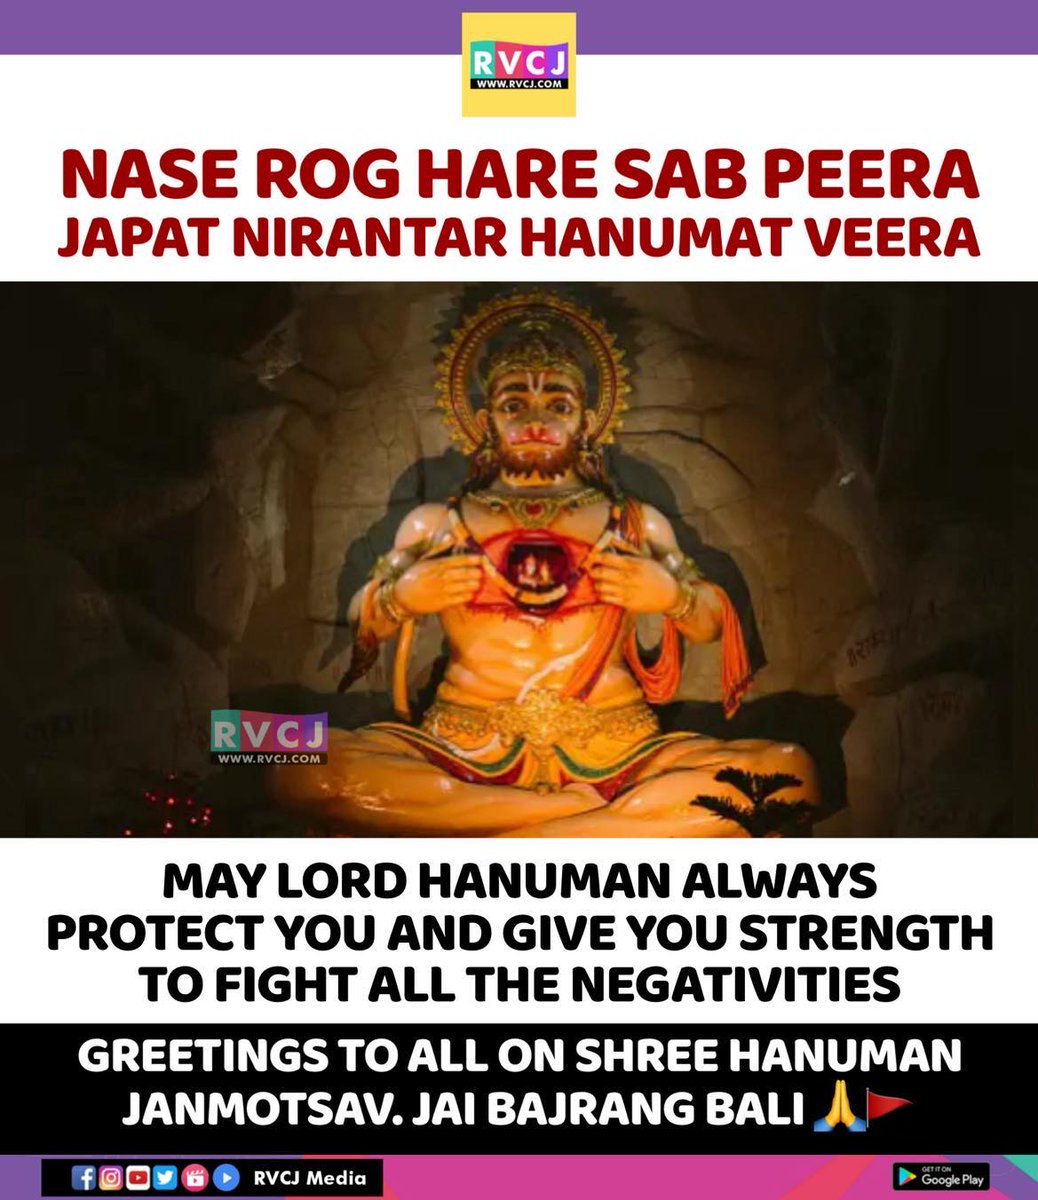 Greetings to all on Shree Hanuman Janmotsav 🙏🏻